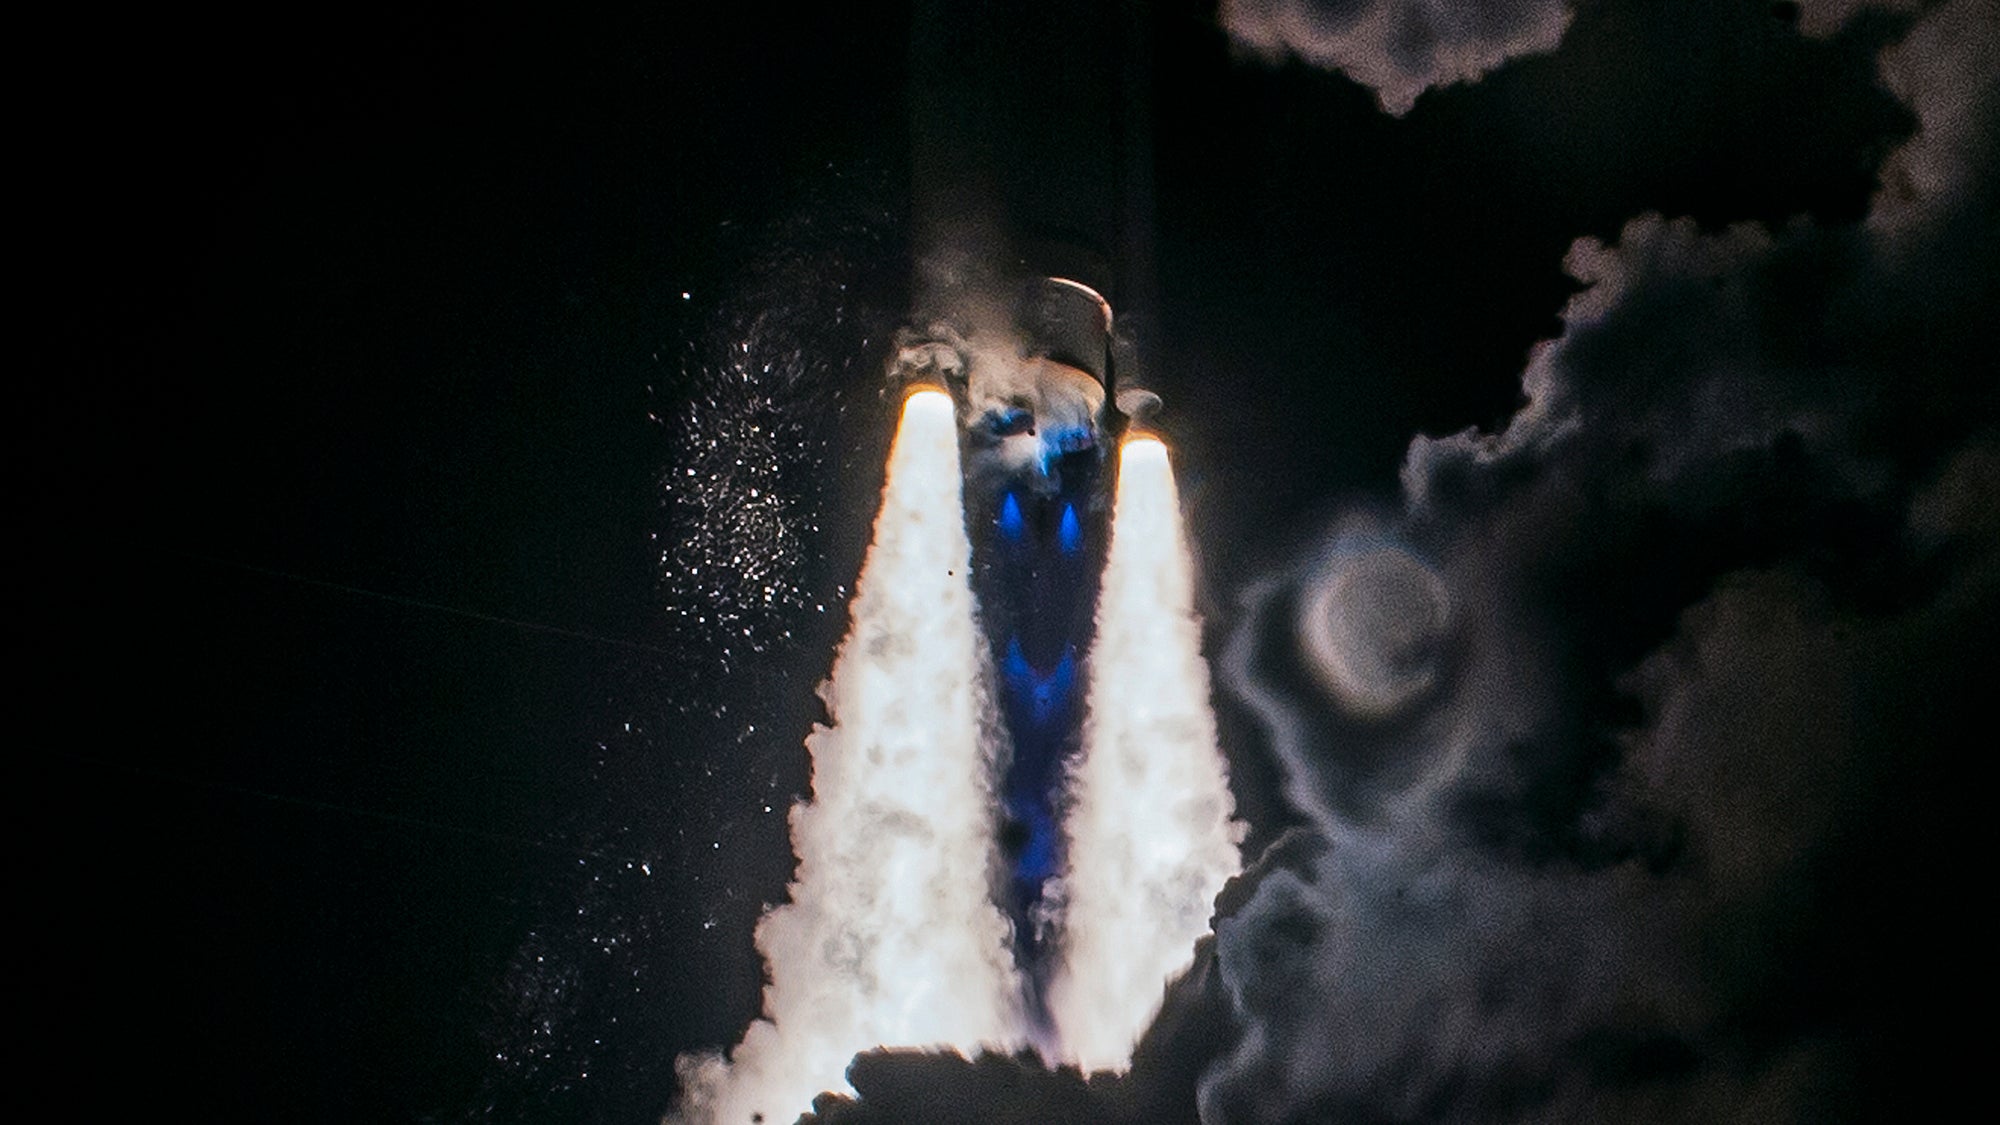 El módulo de aterrizaje lunar Peregrine experimenta una “anomalía” técnica tras su lanzamiento exitoso